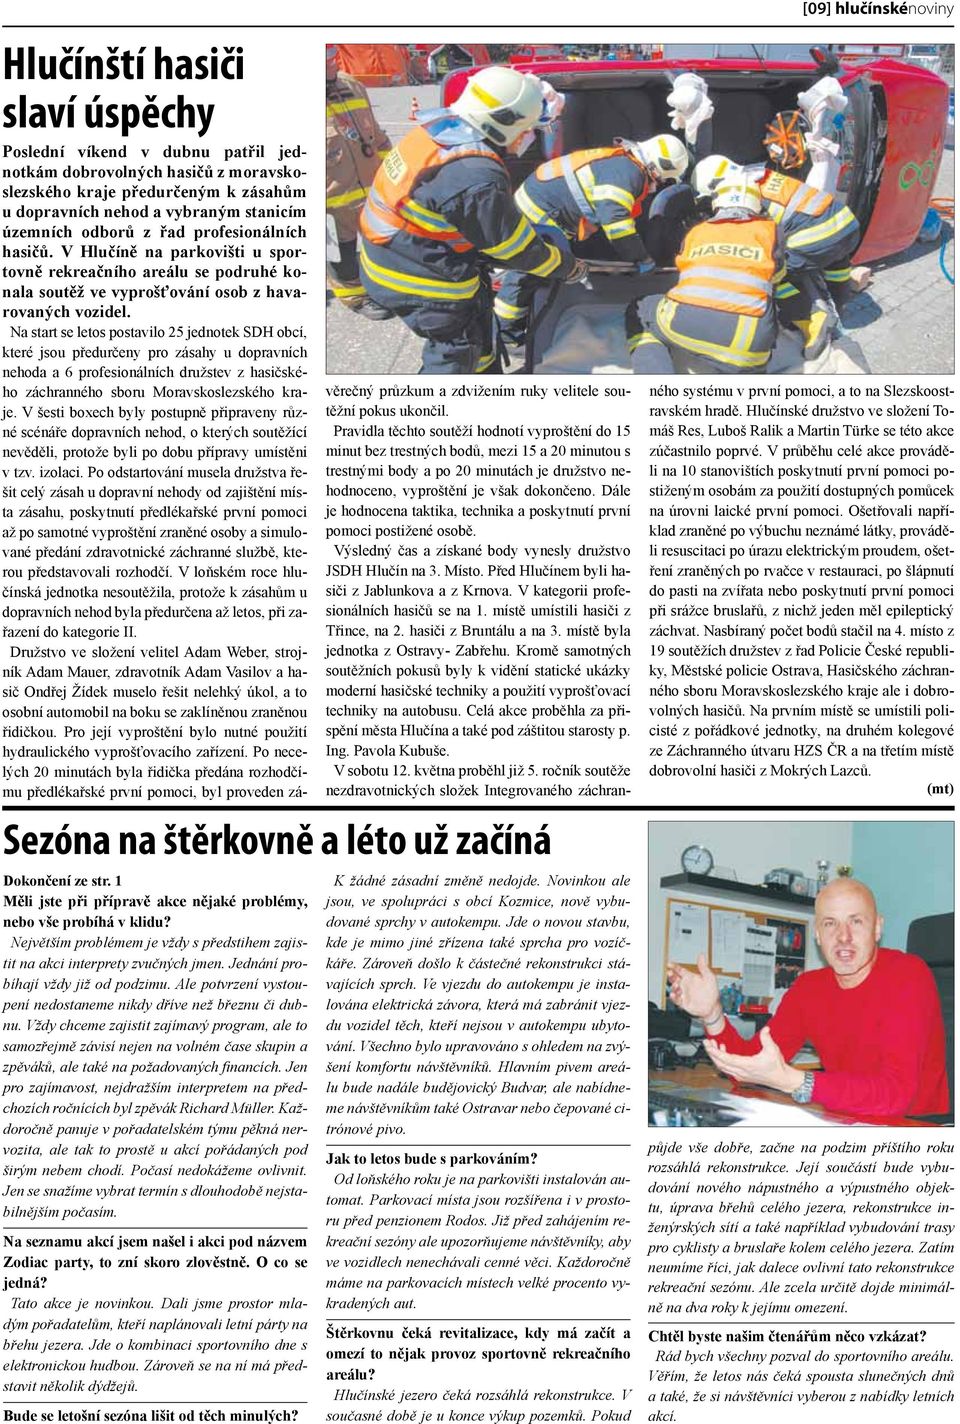 Na start se letos postavilo 25 jednotek SDH obcí, které jsou předurčeny pro zásahy u dopravních nehoda a 6 profesionálních družstev z hasičského záchranného sboru Moravskoslezského kraje.